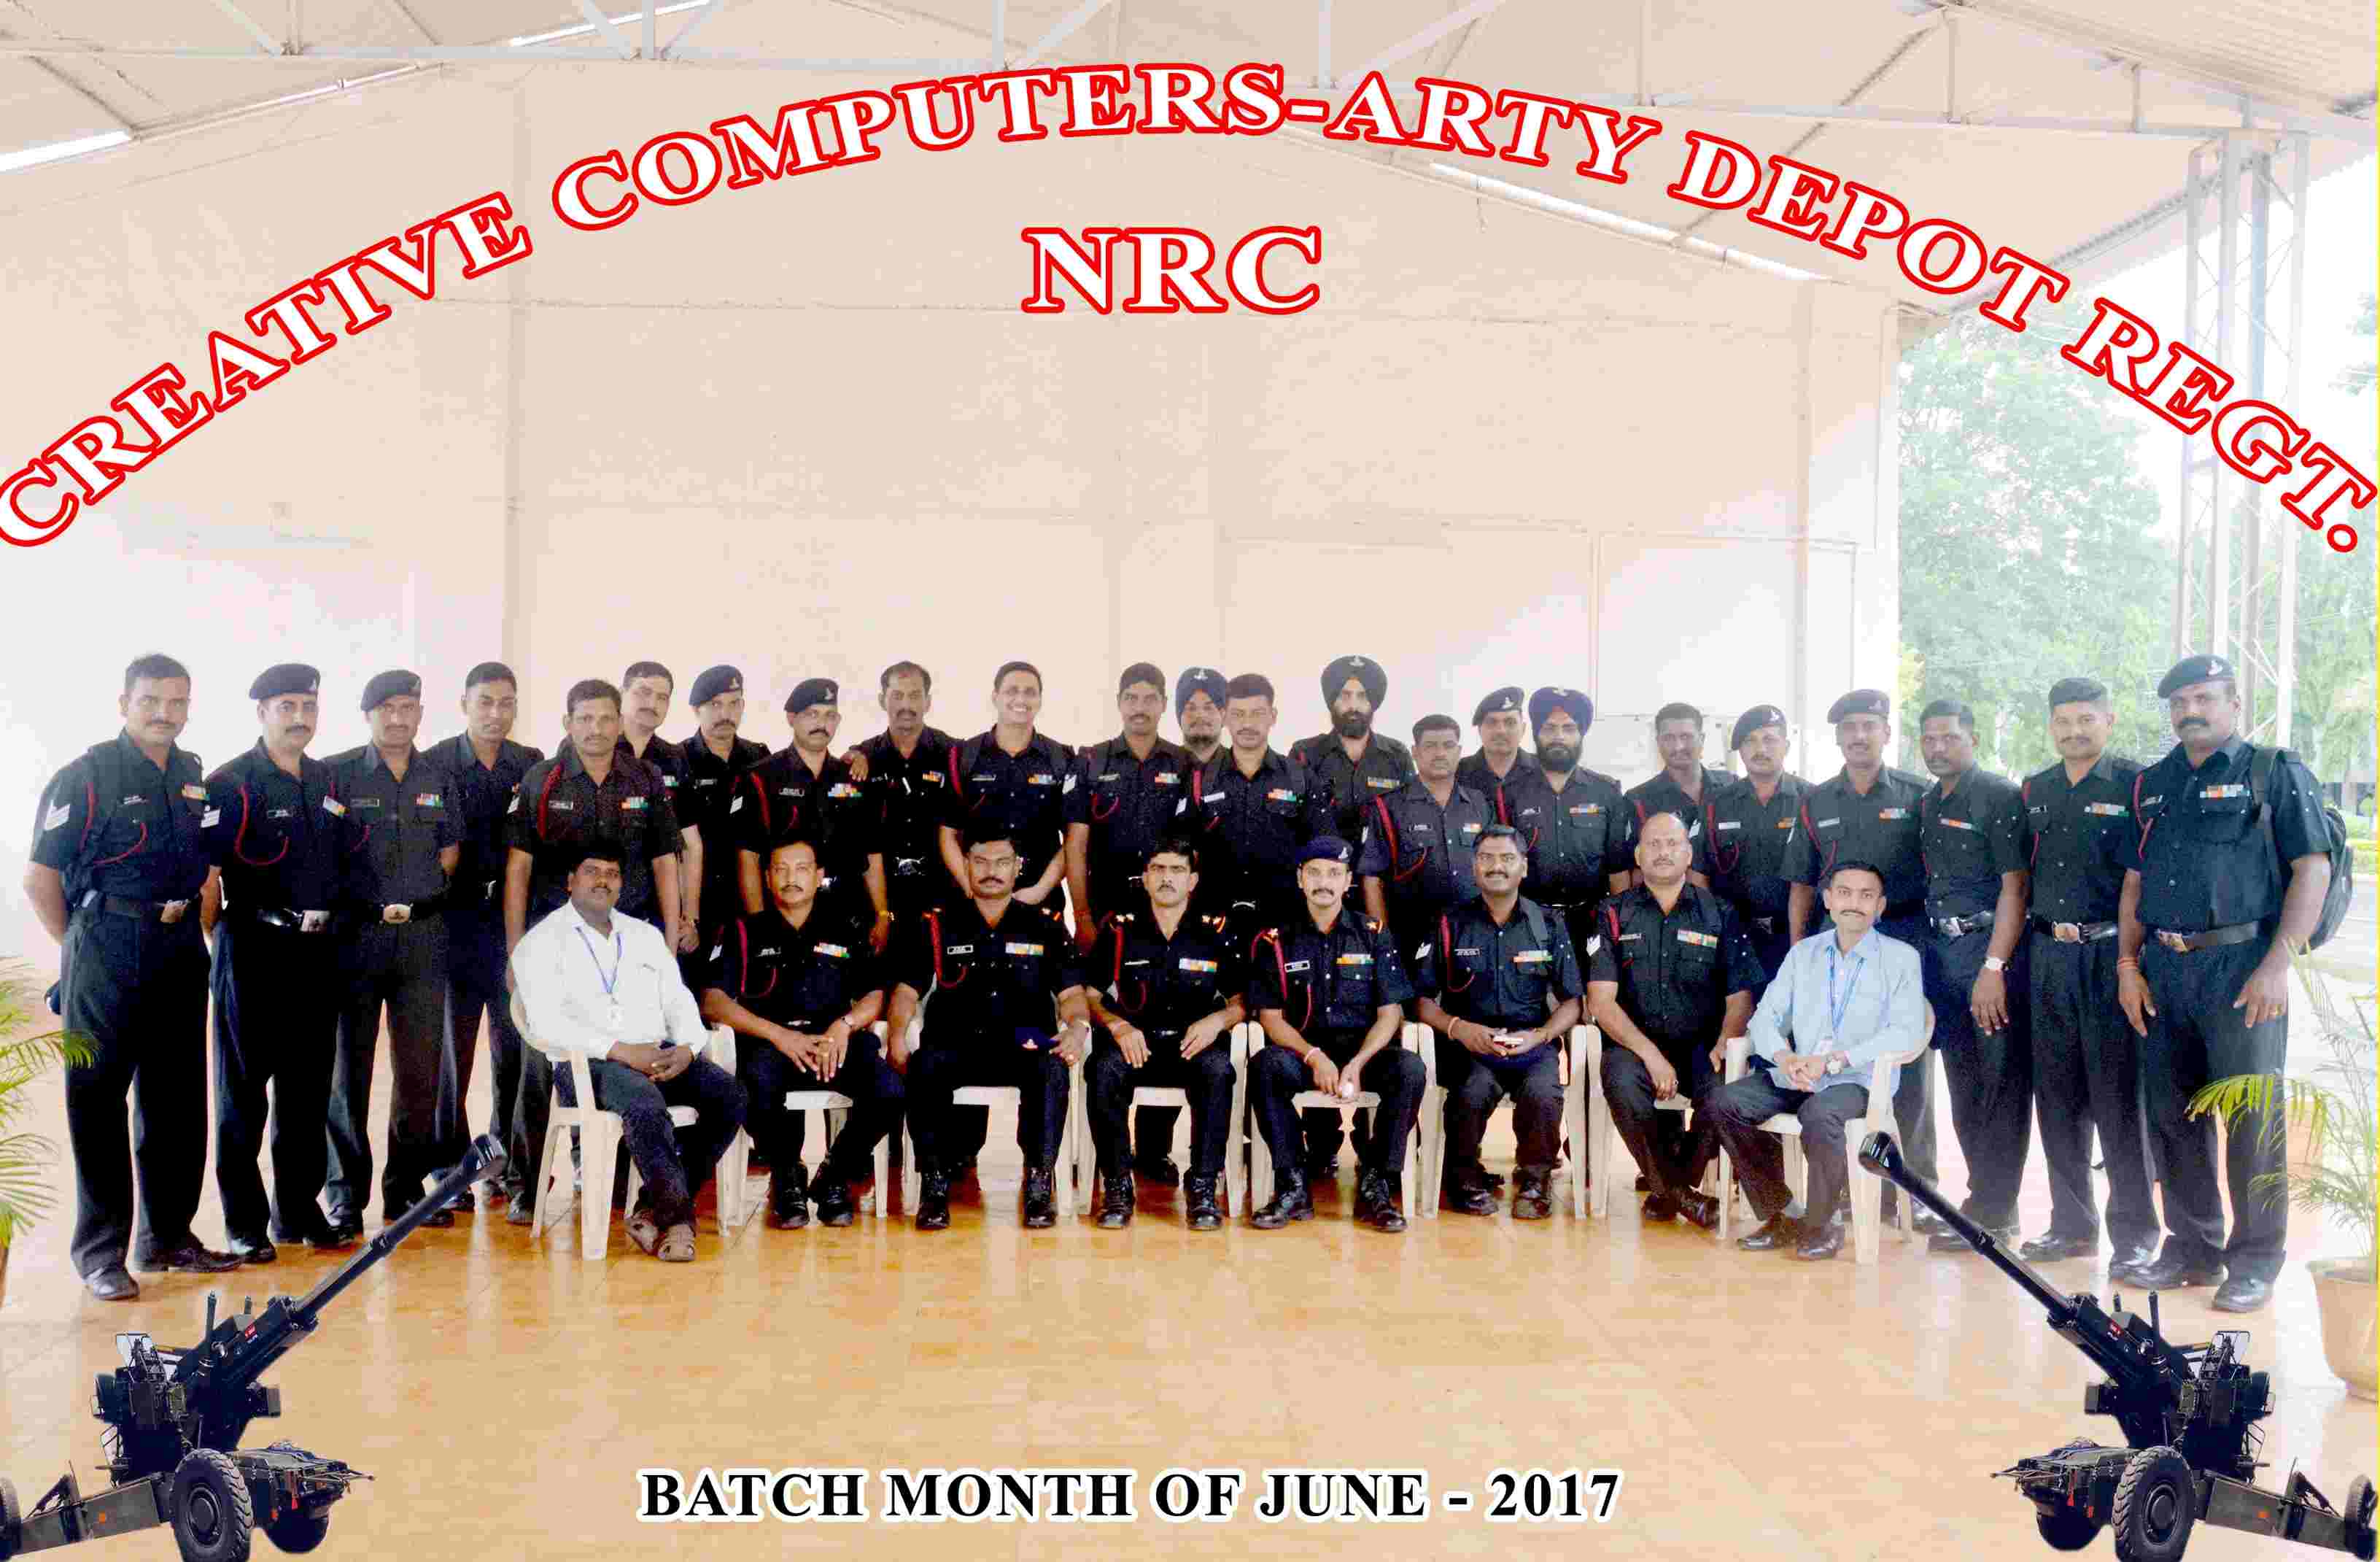 Arty Depot Regiment - Batch of June 2017